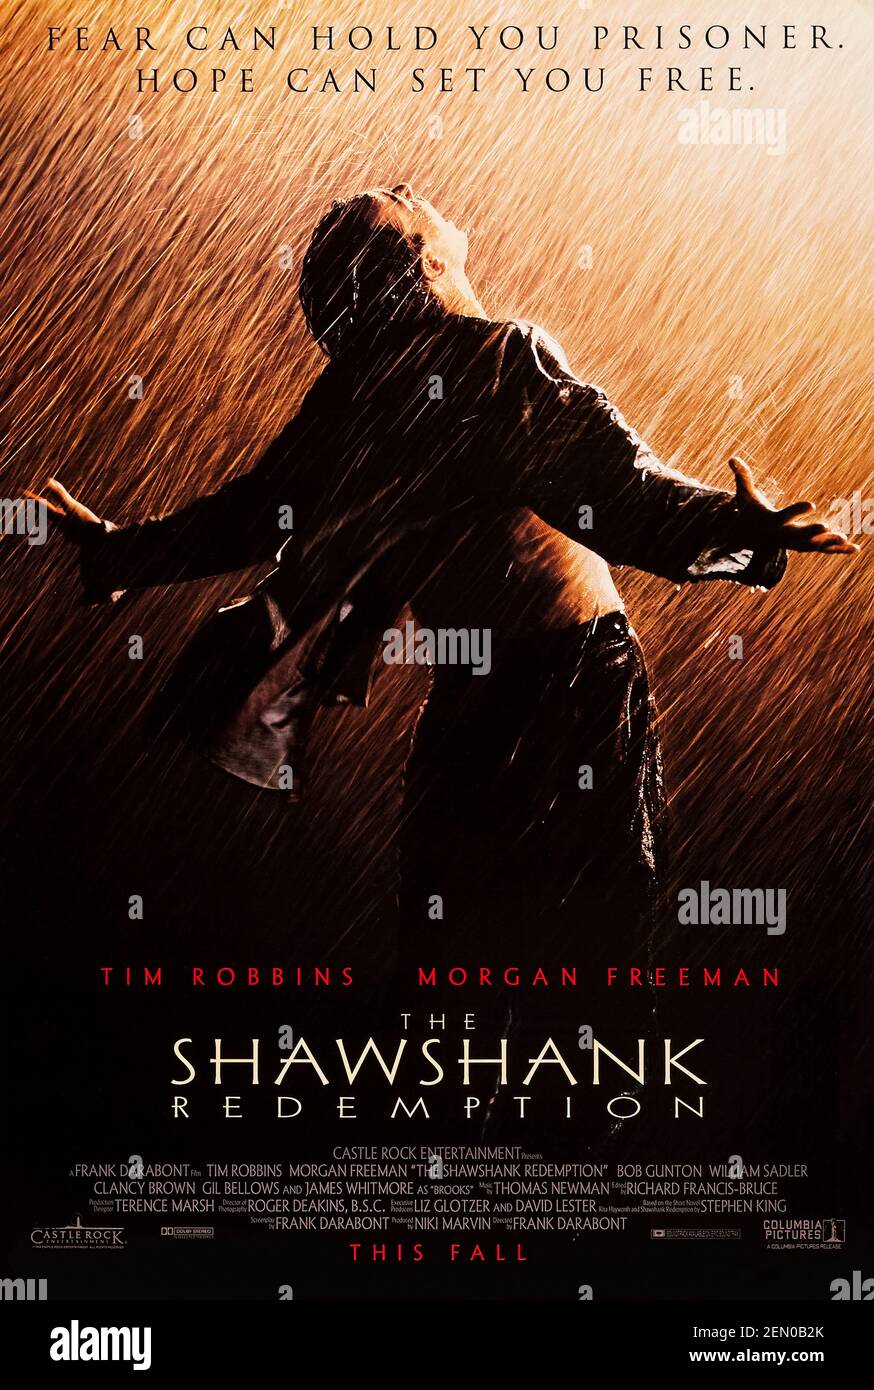 The Shawshank Redemption (1994) diretto da Frank Darabont e interpretato da Tim Robbins, Morgan Freeman e Bob Gunton. Adattamento della breve storia di Stephen King sul legame di amicizia tra due prigionieri che trovano un modo per mantenere viva la speranza in circostanze avverse. Foto Stock